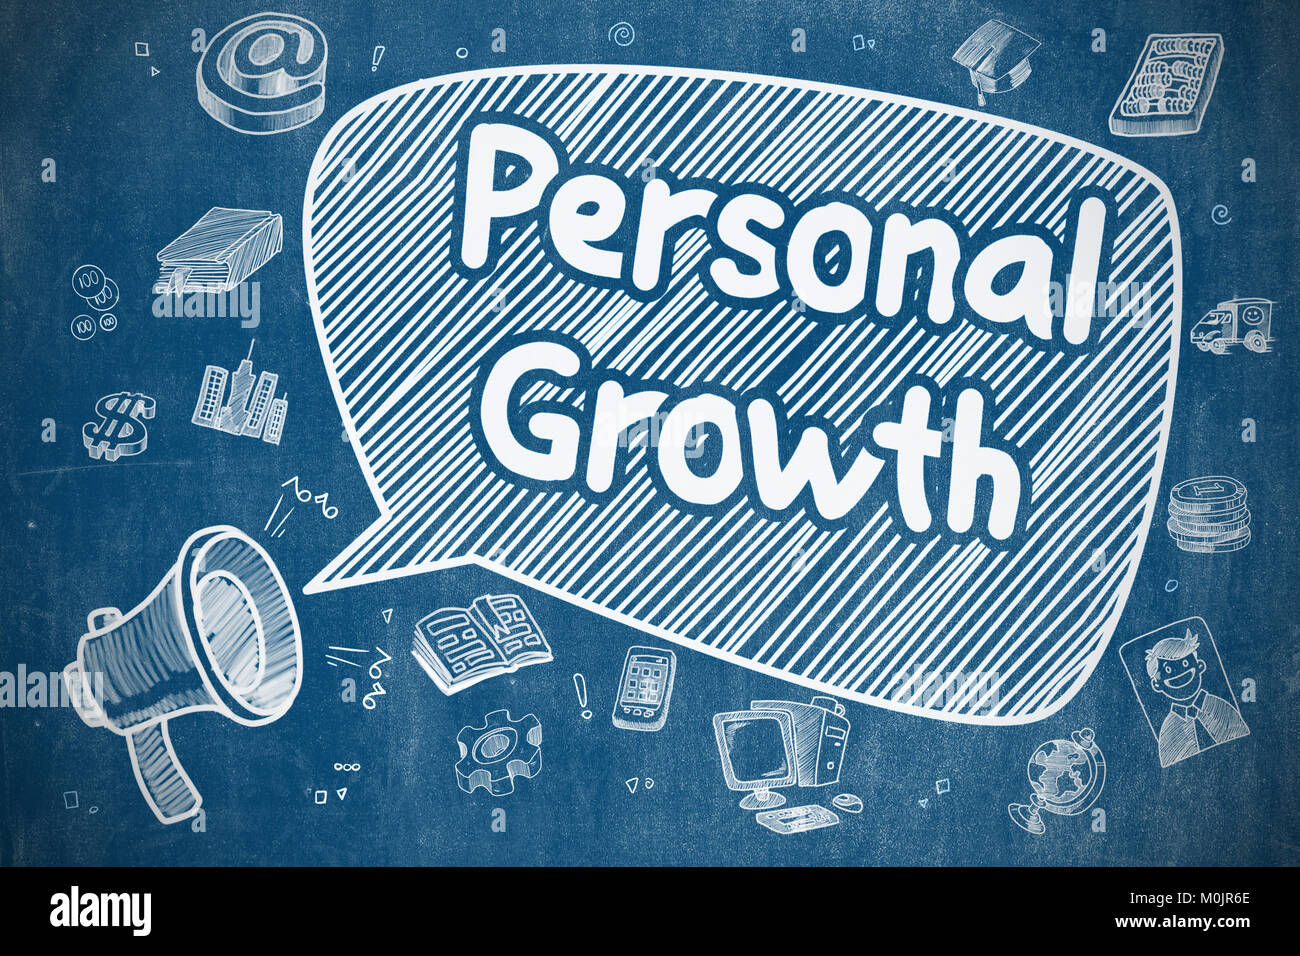 Persönliches Wachstum - Doodle Abbildung auf der blauen Tafel. Stockfoto